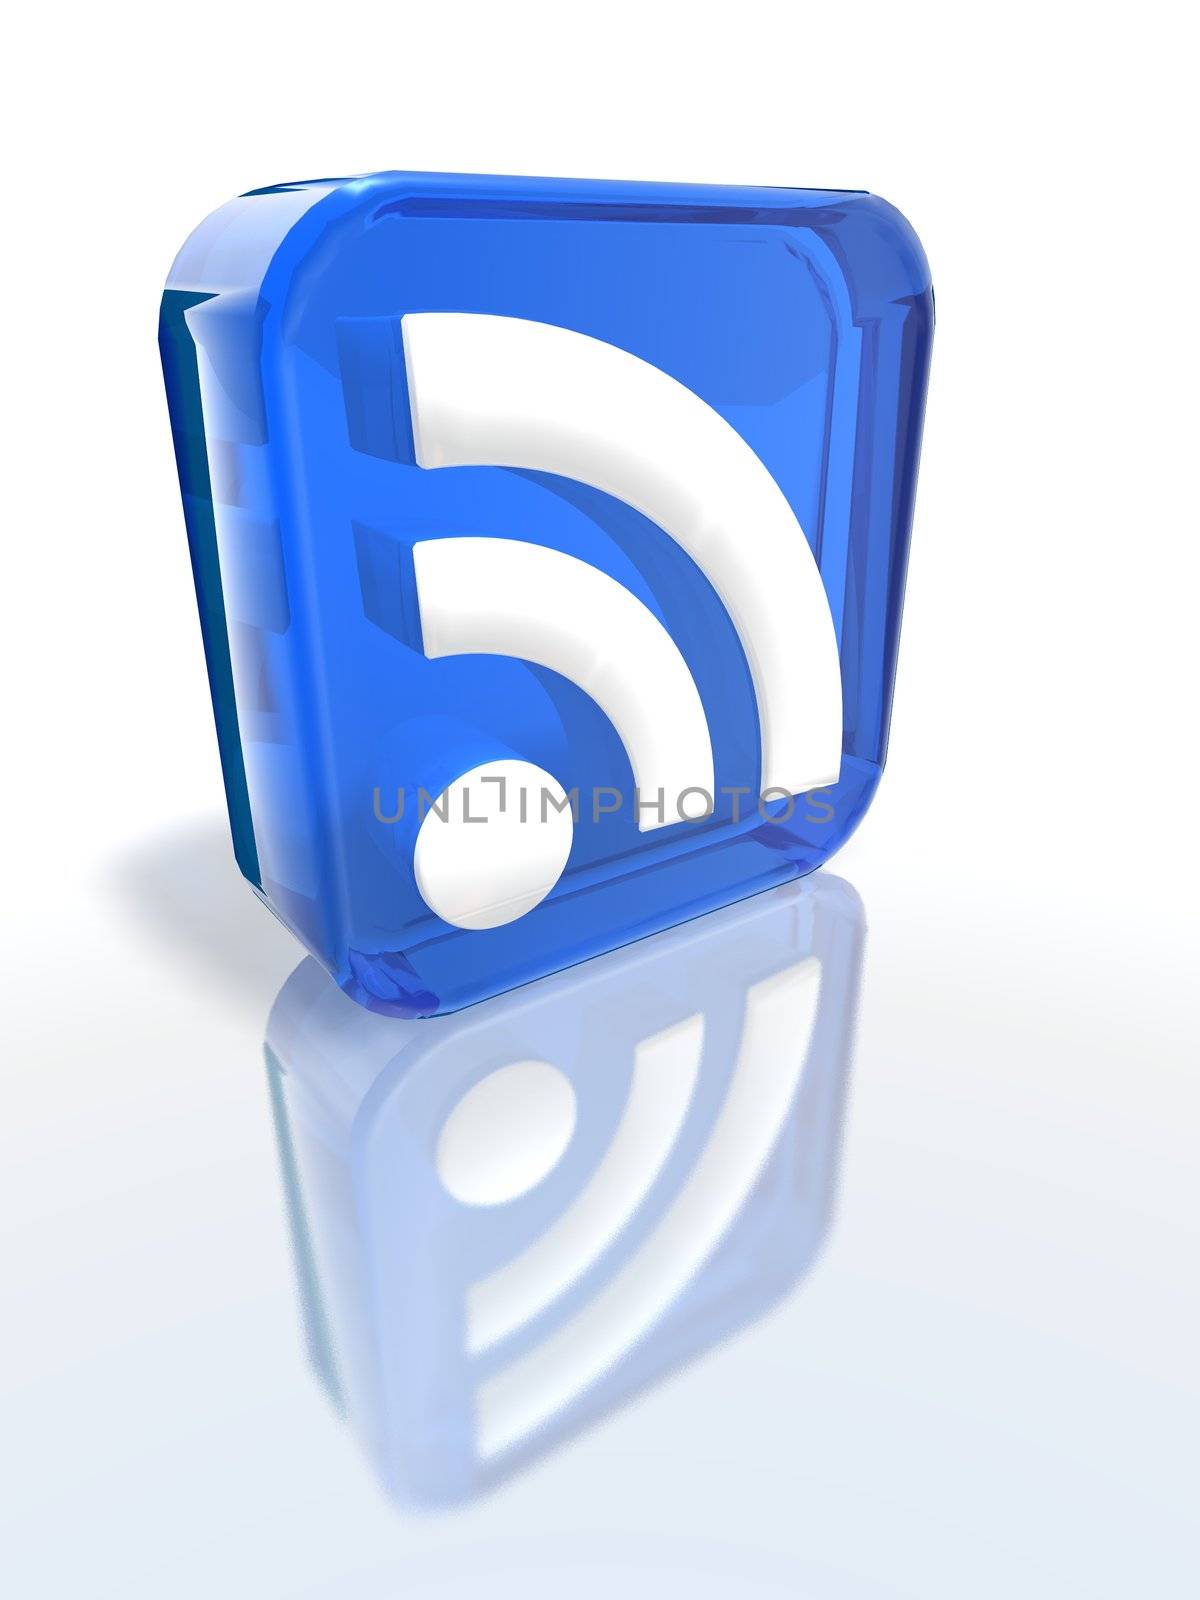 Blue RSS sign by jbouzou